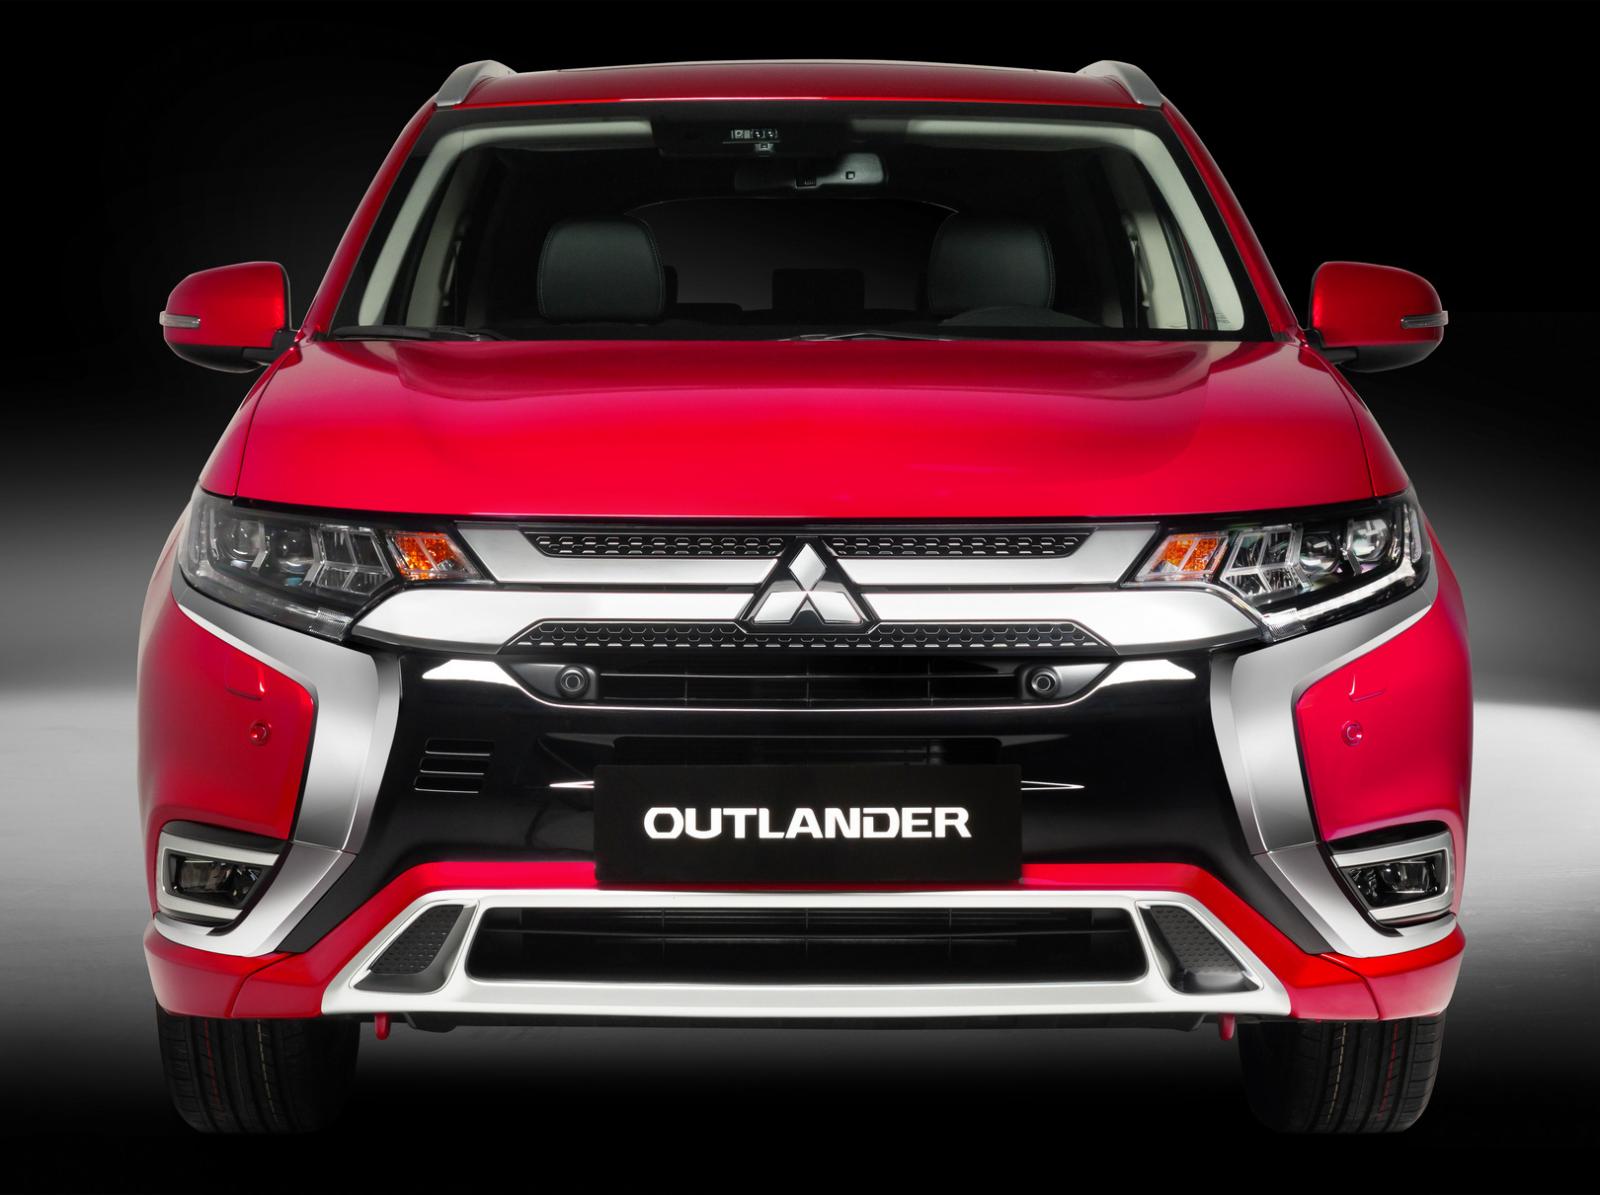 Giá xe Outlander lăn bánh: Với thông tin giá lăn bánh đã rõ ràng, bạn đang chờ gì mà không sở hữu một chiếc xe Mitsubishi Outlander đẹp như trong hình ảnh này? Điểm nổi bật về tính năng và sự tiện dụng của xe sẽ khiến bạn không thể từ chối.